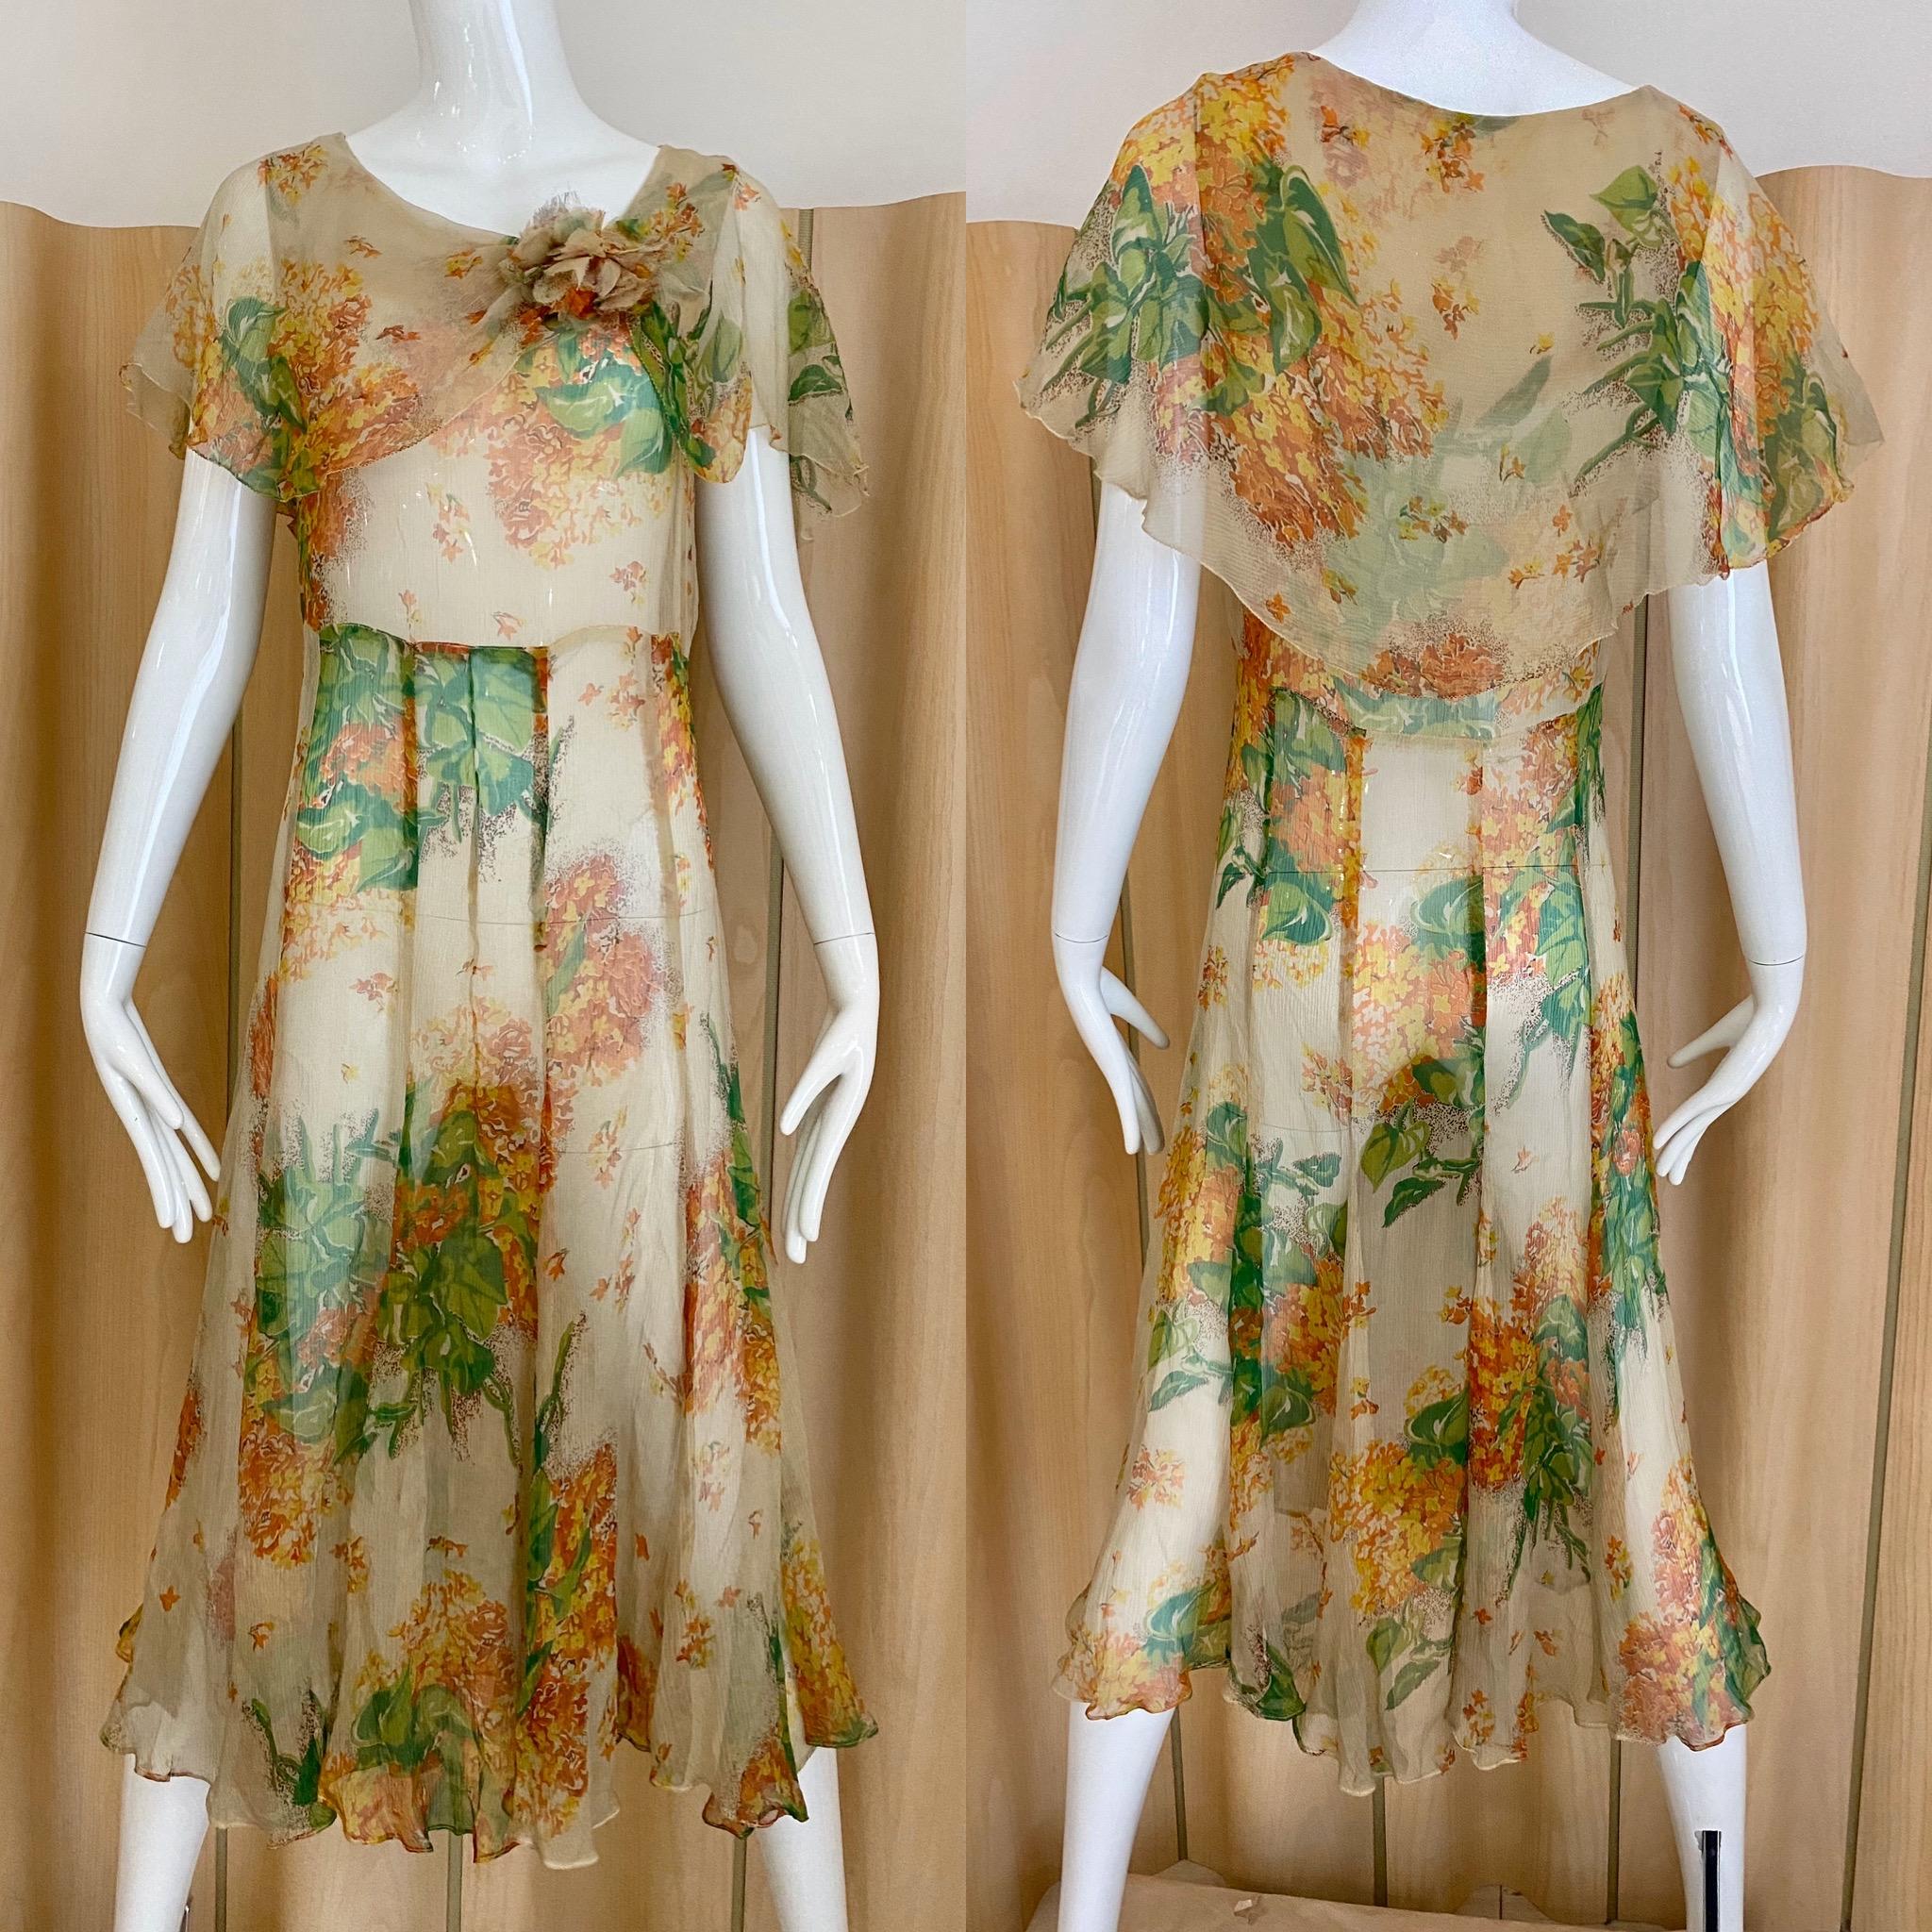 Robe de jour vintage des années 30 en soie à imprimé floral crème, vert et orange.
Taille 2/4